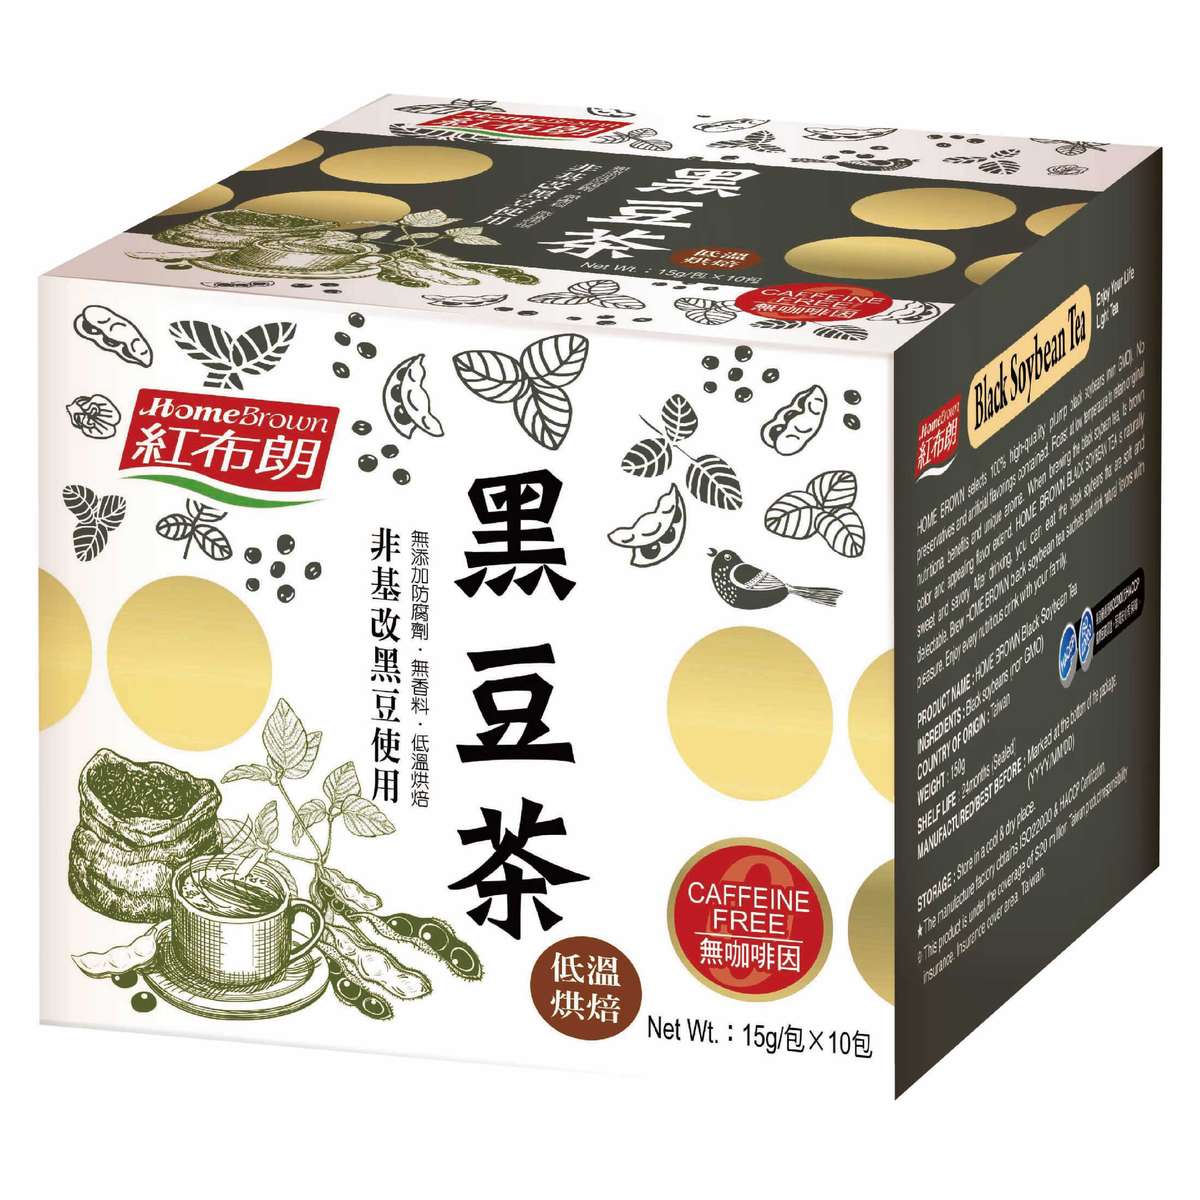 黑豆茶(15g/包*10包) (此日期前最佳: 2022/11/15) #素食 #黑豆 #不含咖啡因 #低溫烘焙 #非基因改造 #無添加防腐劑 #早餐